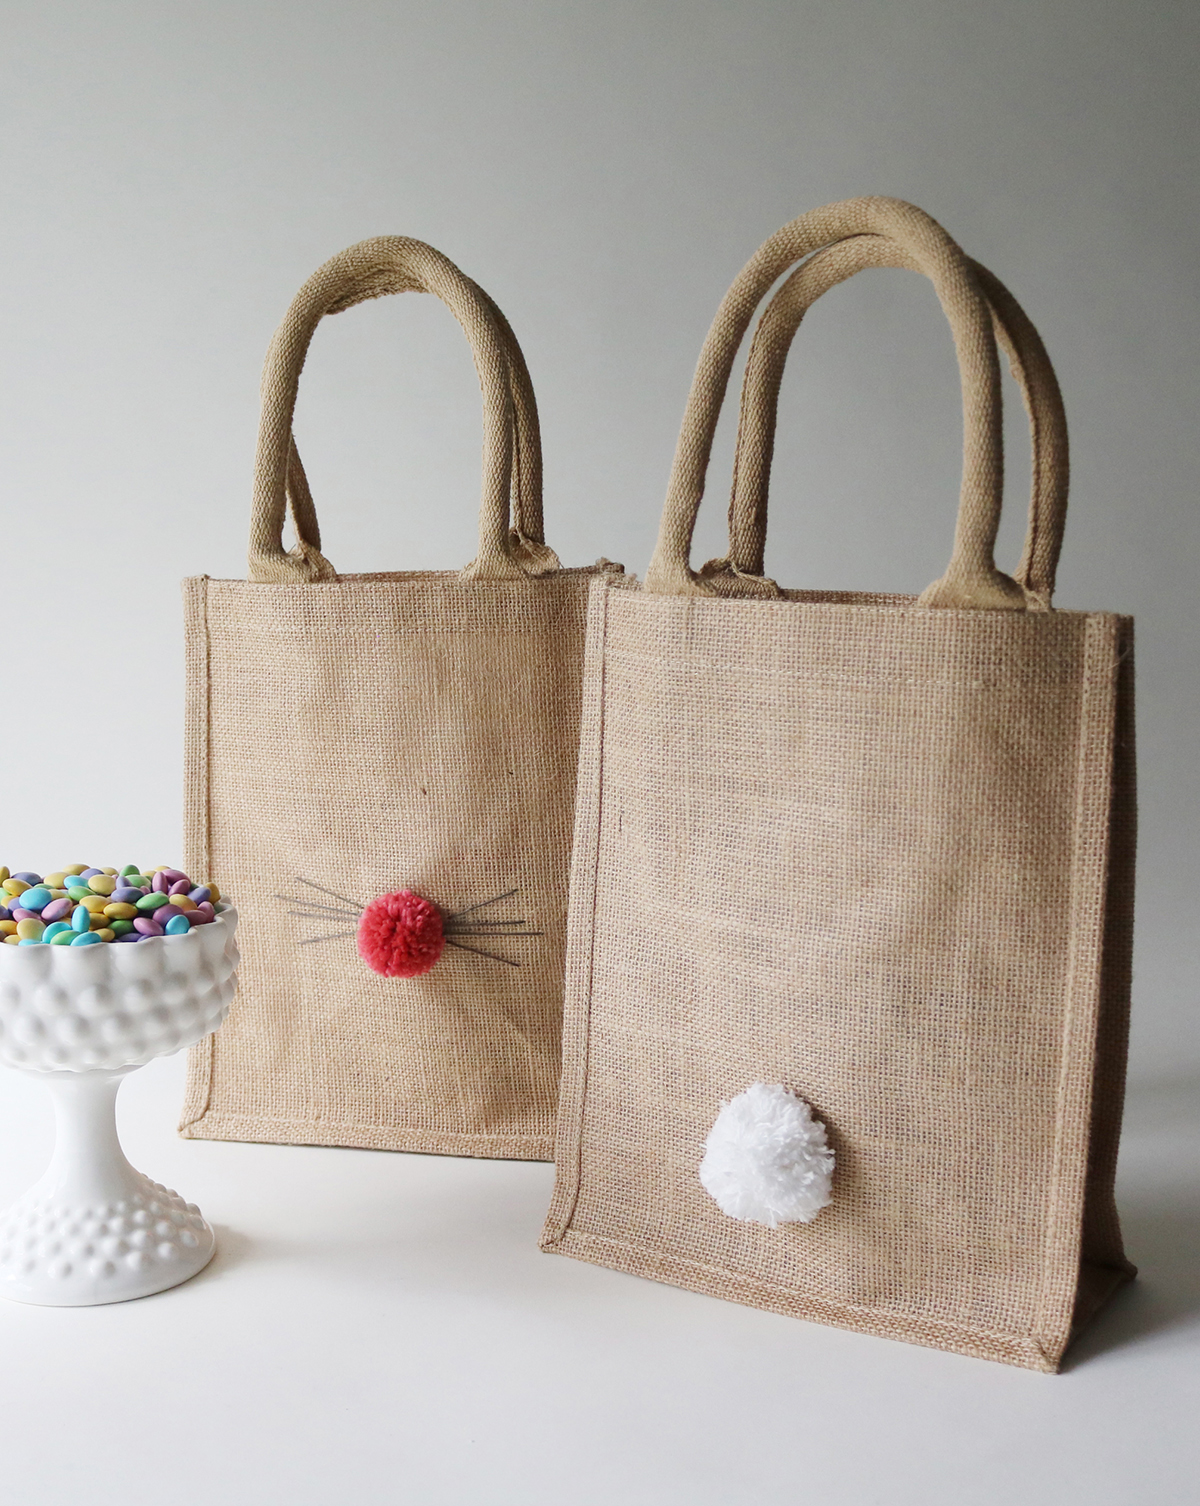 DIY Easter themed gift packaging inspiration using handmade pom poms | Lorrie Everitt Studio